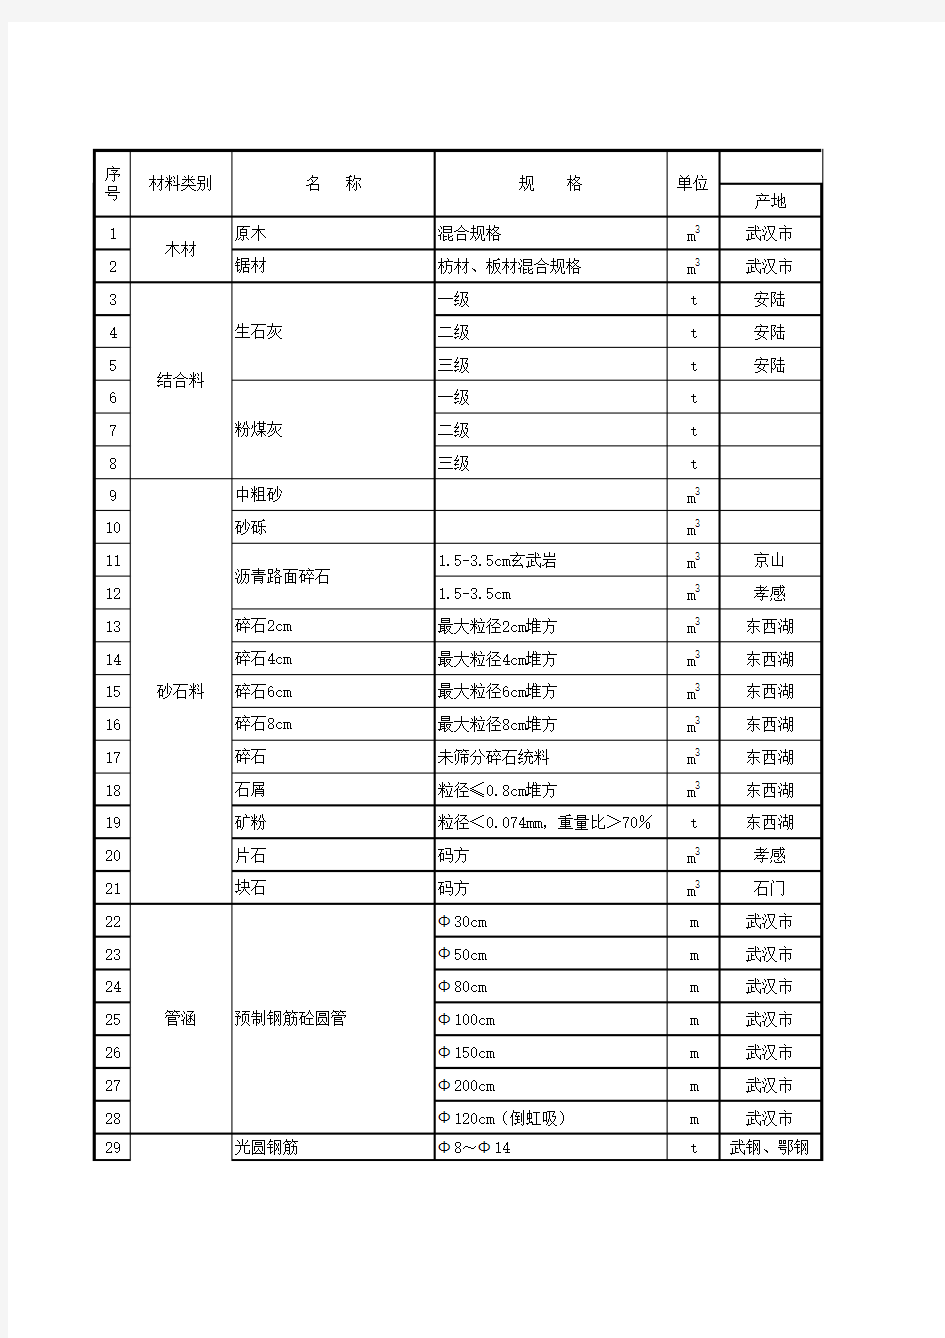 湖北省2011年9月份交通工程主要材料价格信息